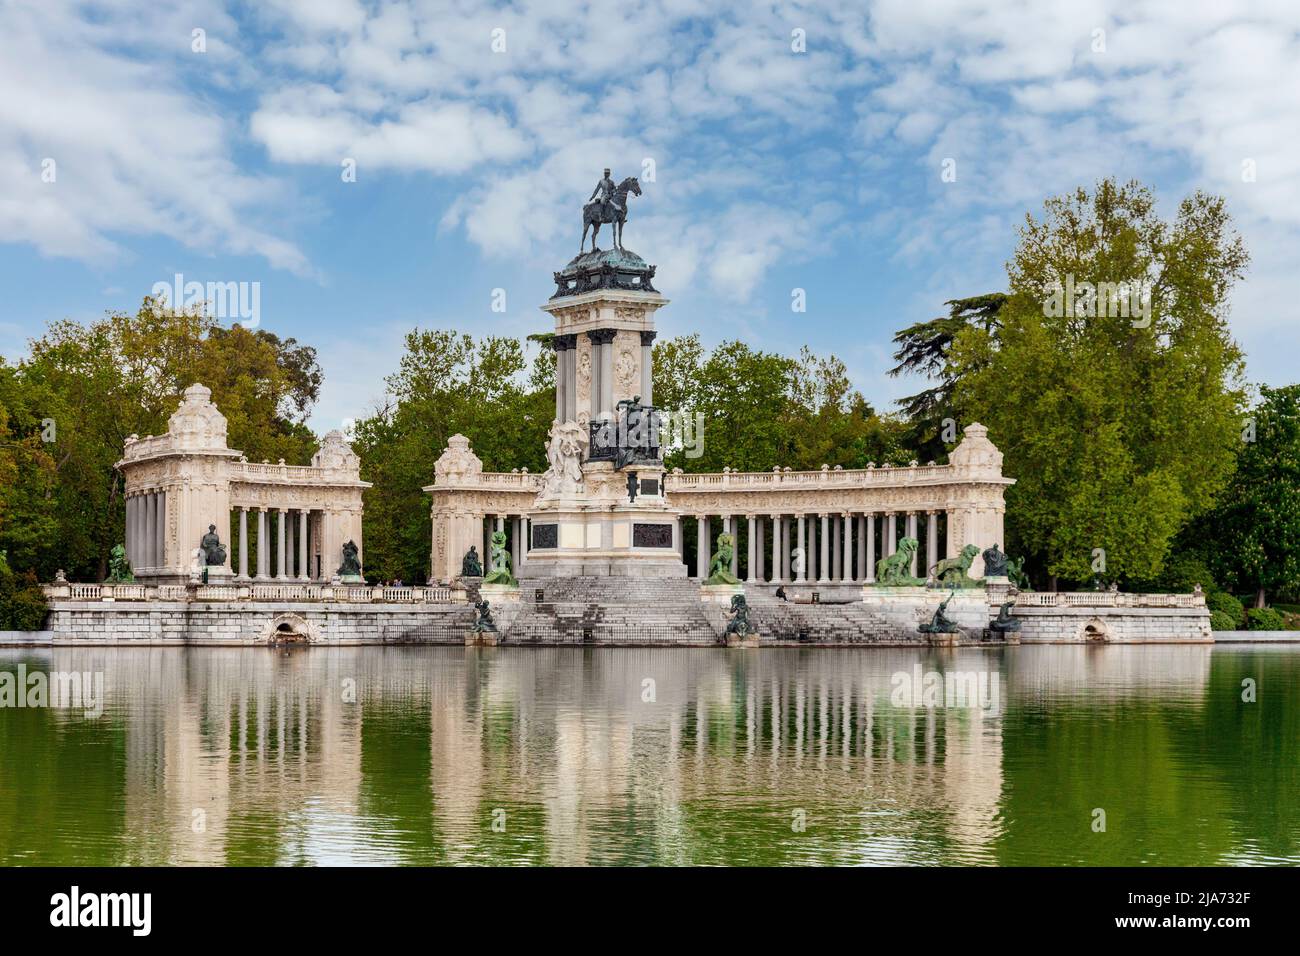 El monumento a Alfonso XII, en el lago artificial del Parque El Retiro, en el centro de Madrid, España, diseñado por el arquitecto José Grases Riera. Foto de stock